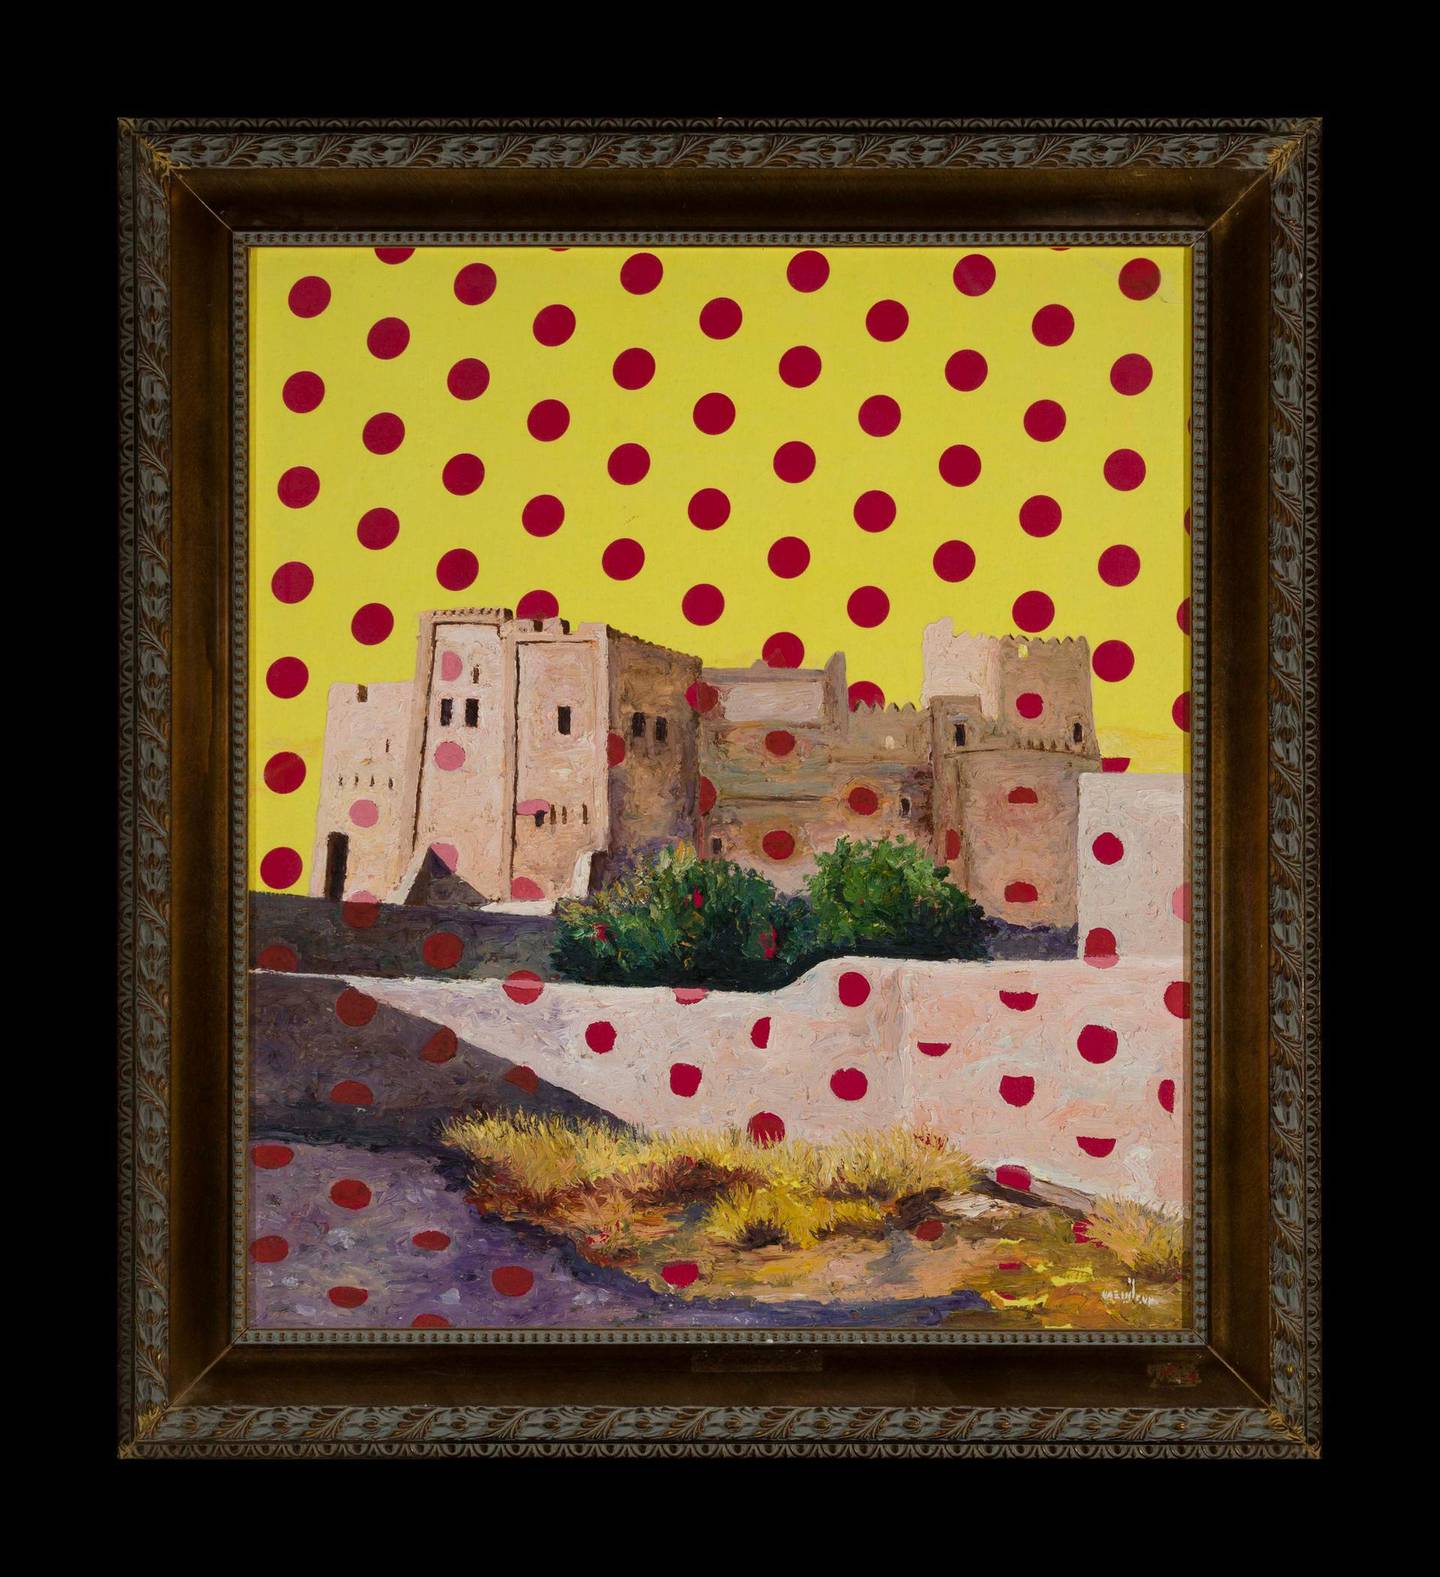 Obaid SuroorFujairah Castle, 2015Oil on canvas, textile80 x 70 cmCourtesy of the artist